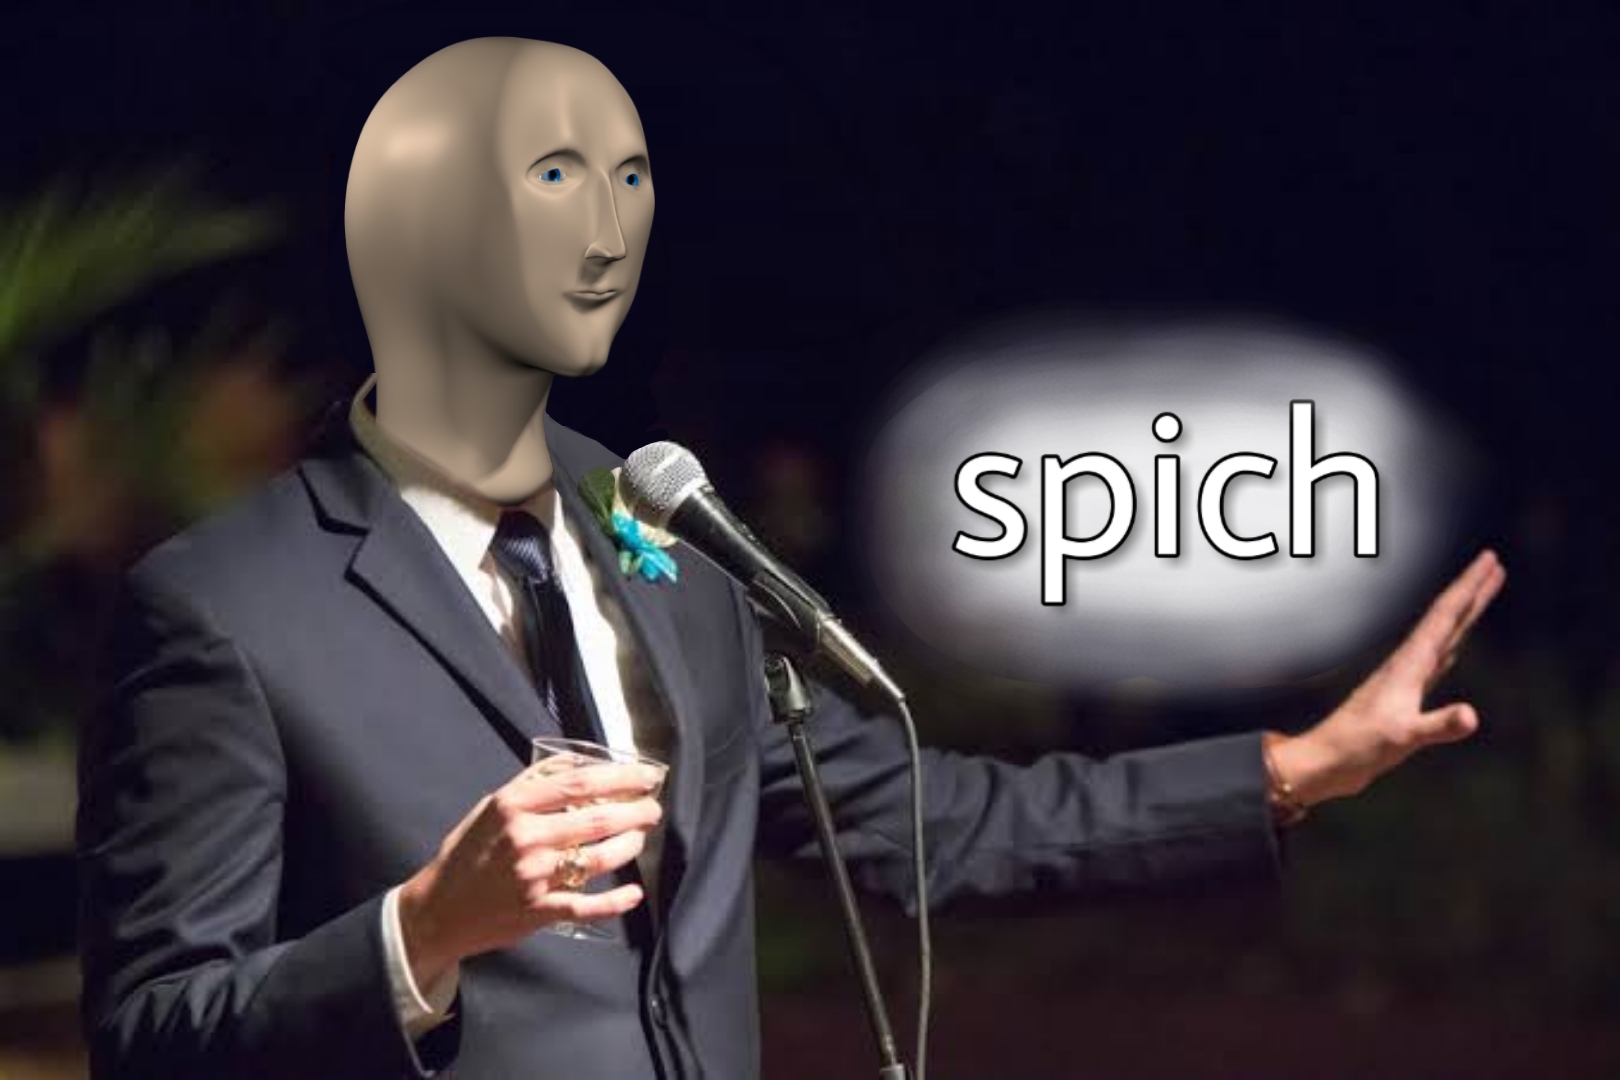 High Quality Meme Man "Spich" Template (Speech) Blank Meme Template